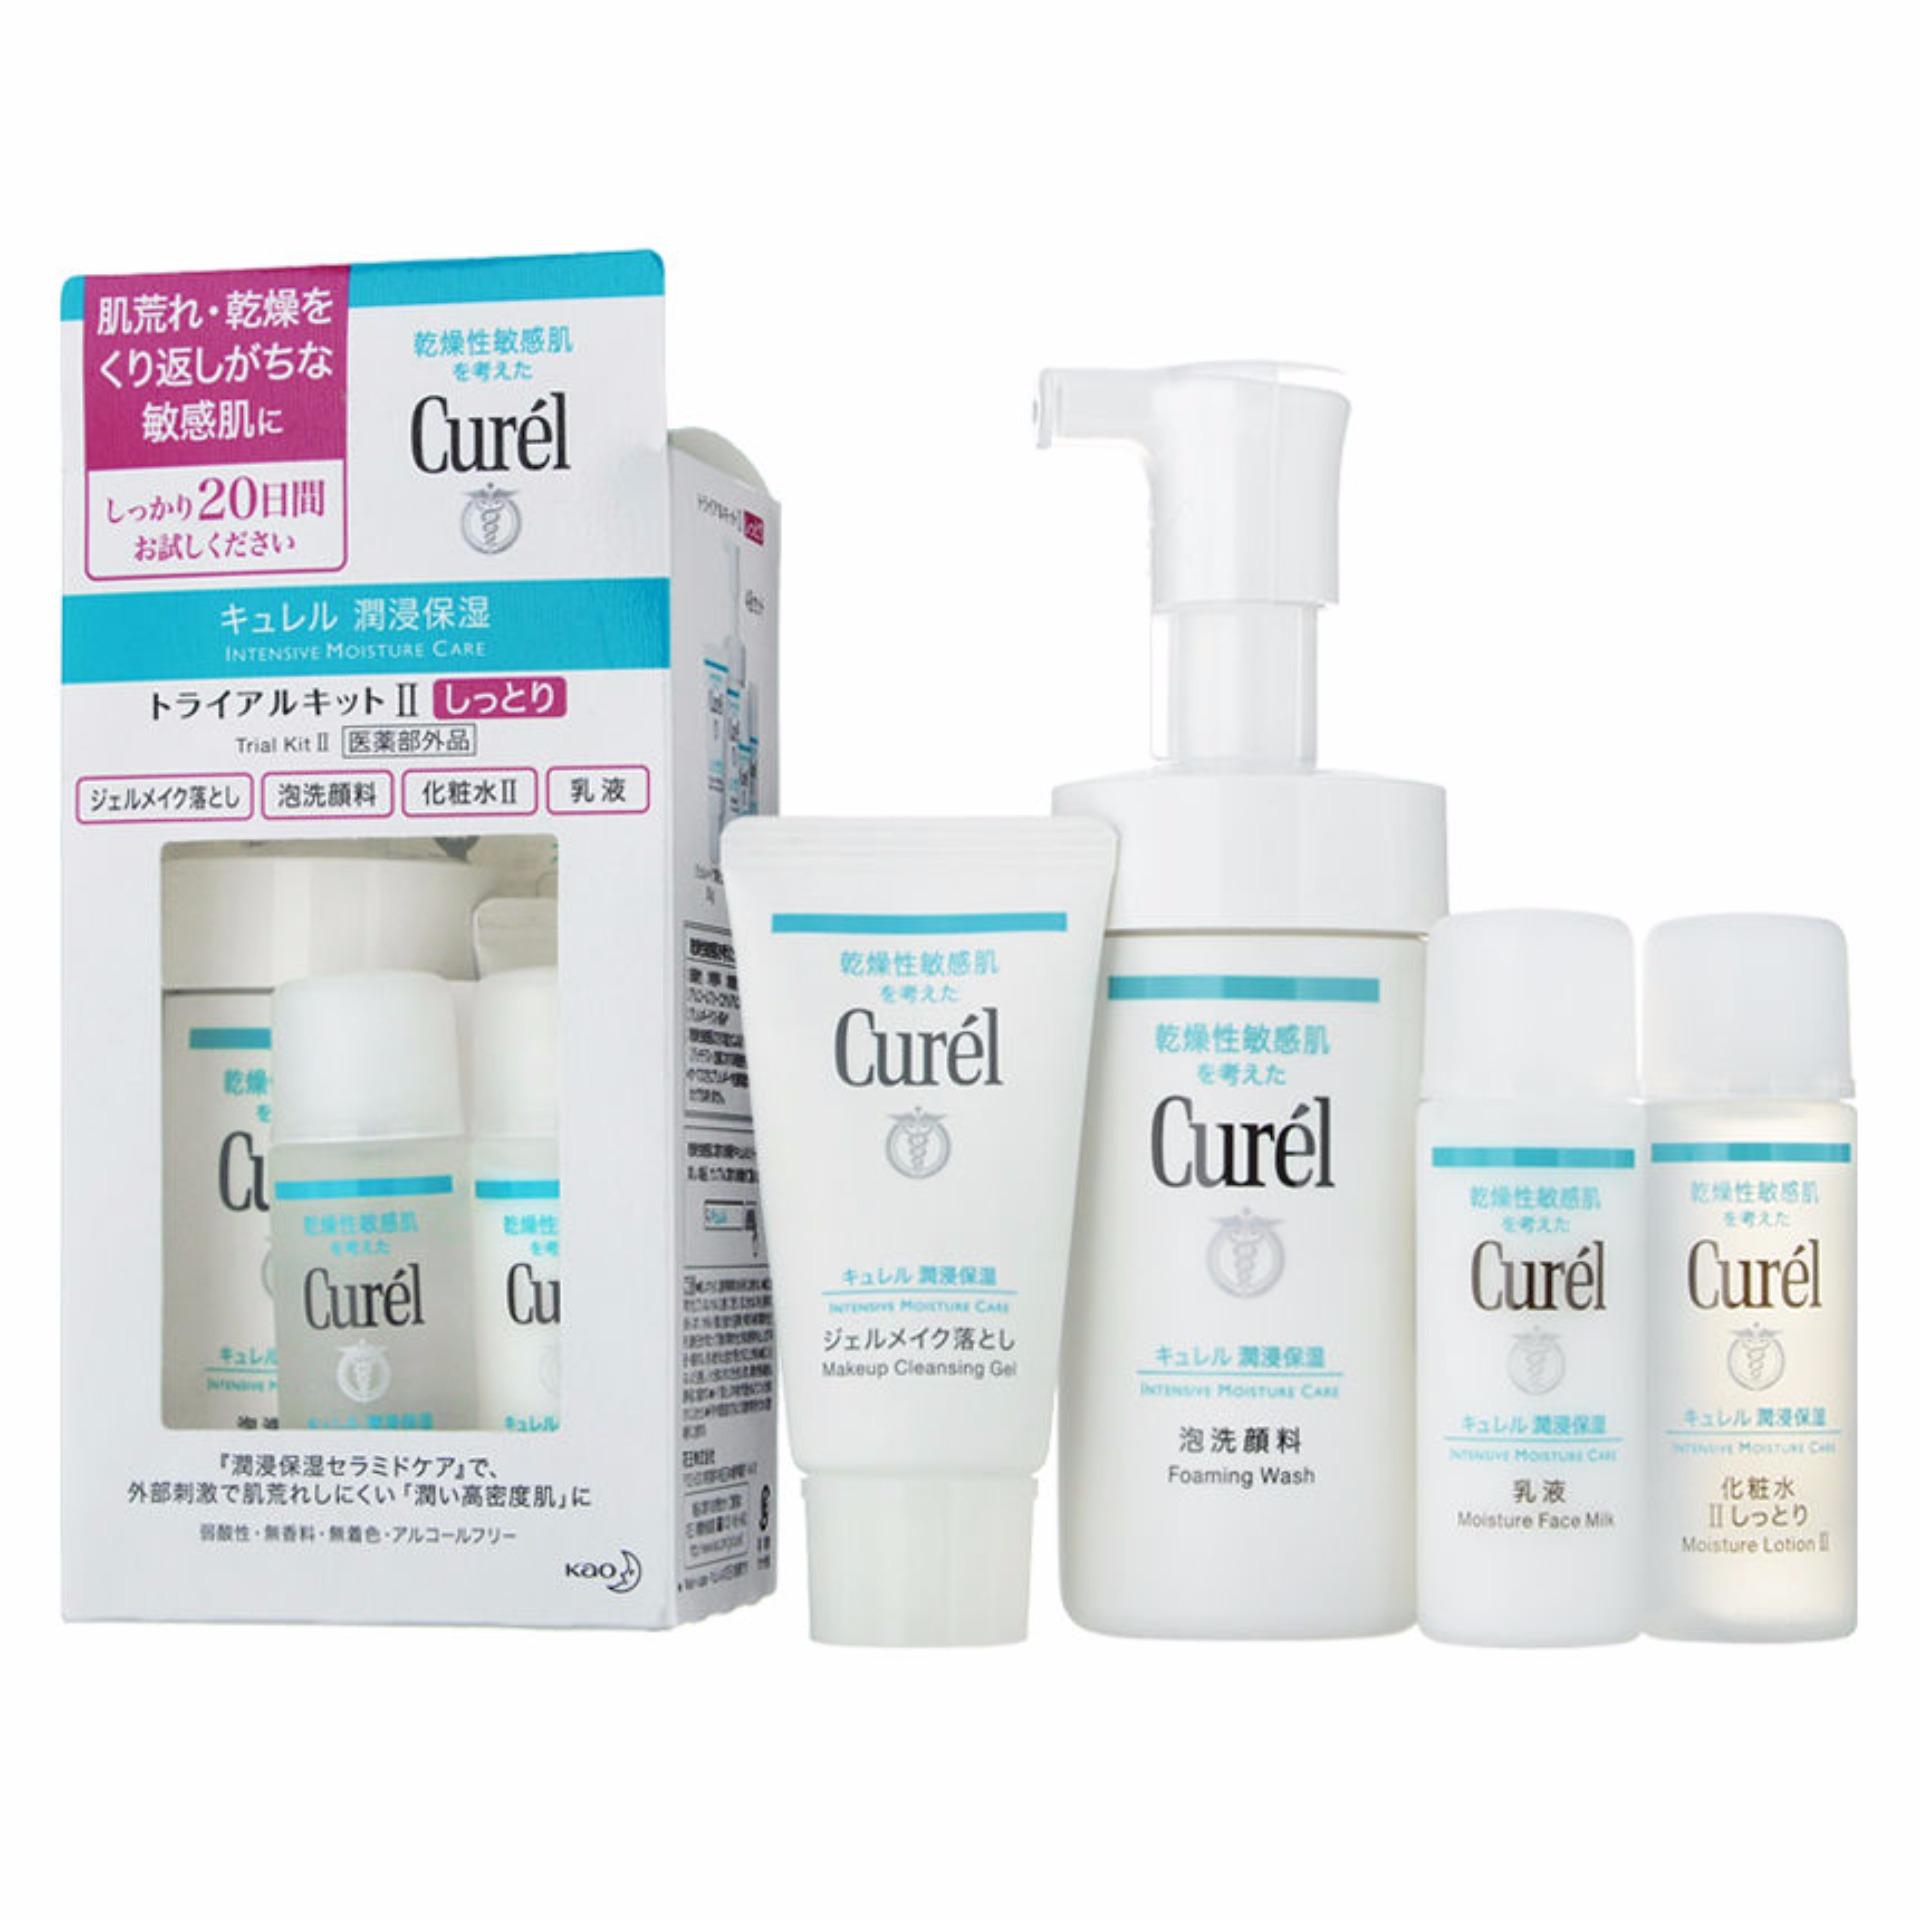 Bộ quà tặng chăm sóc da toàn diện Curel cho da nhạy cảm- Nhật Bản